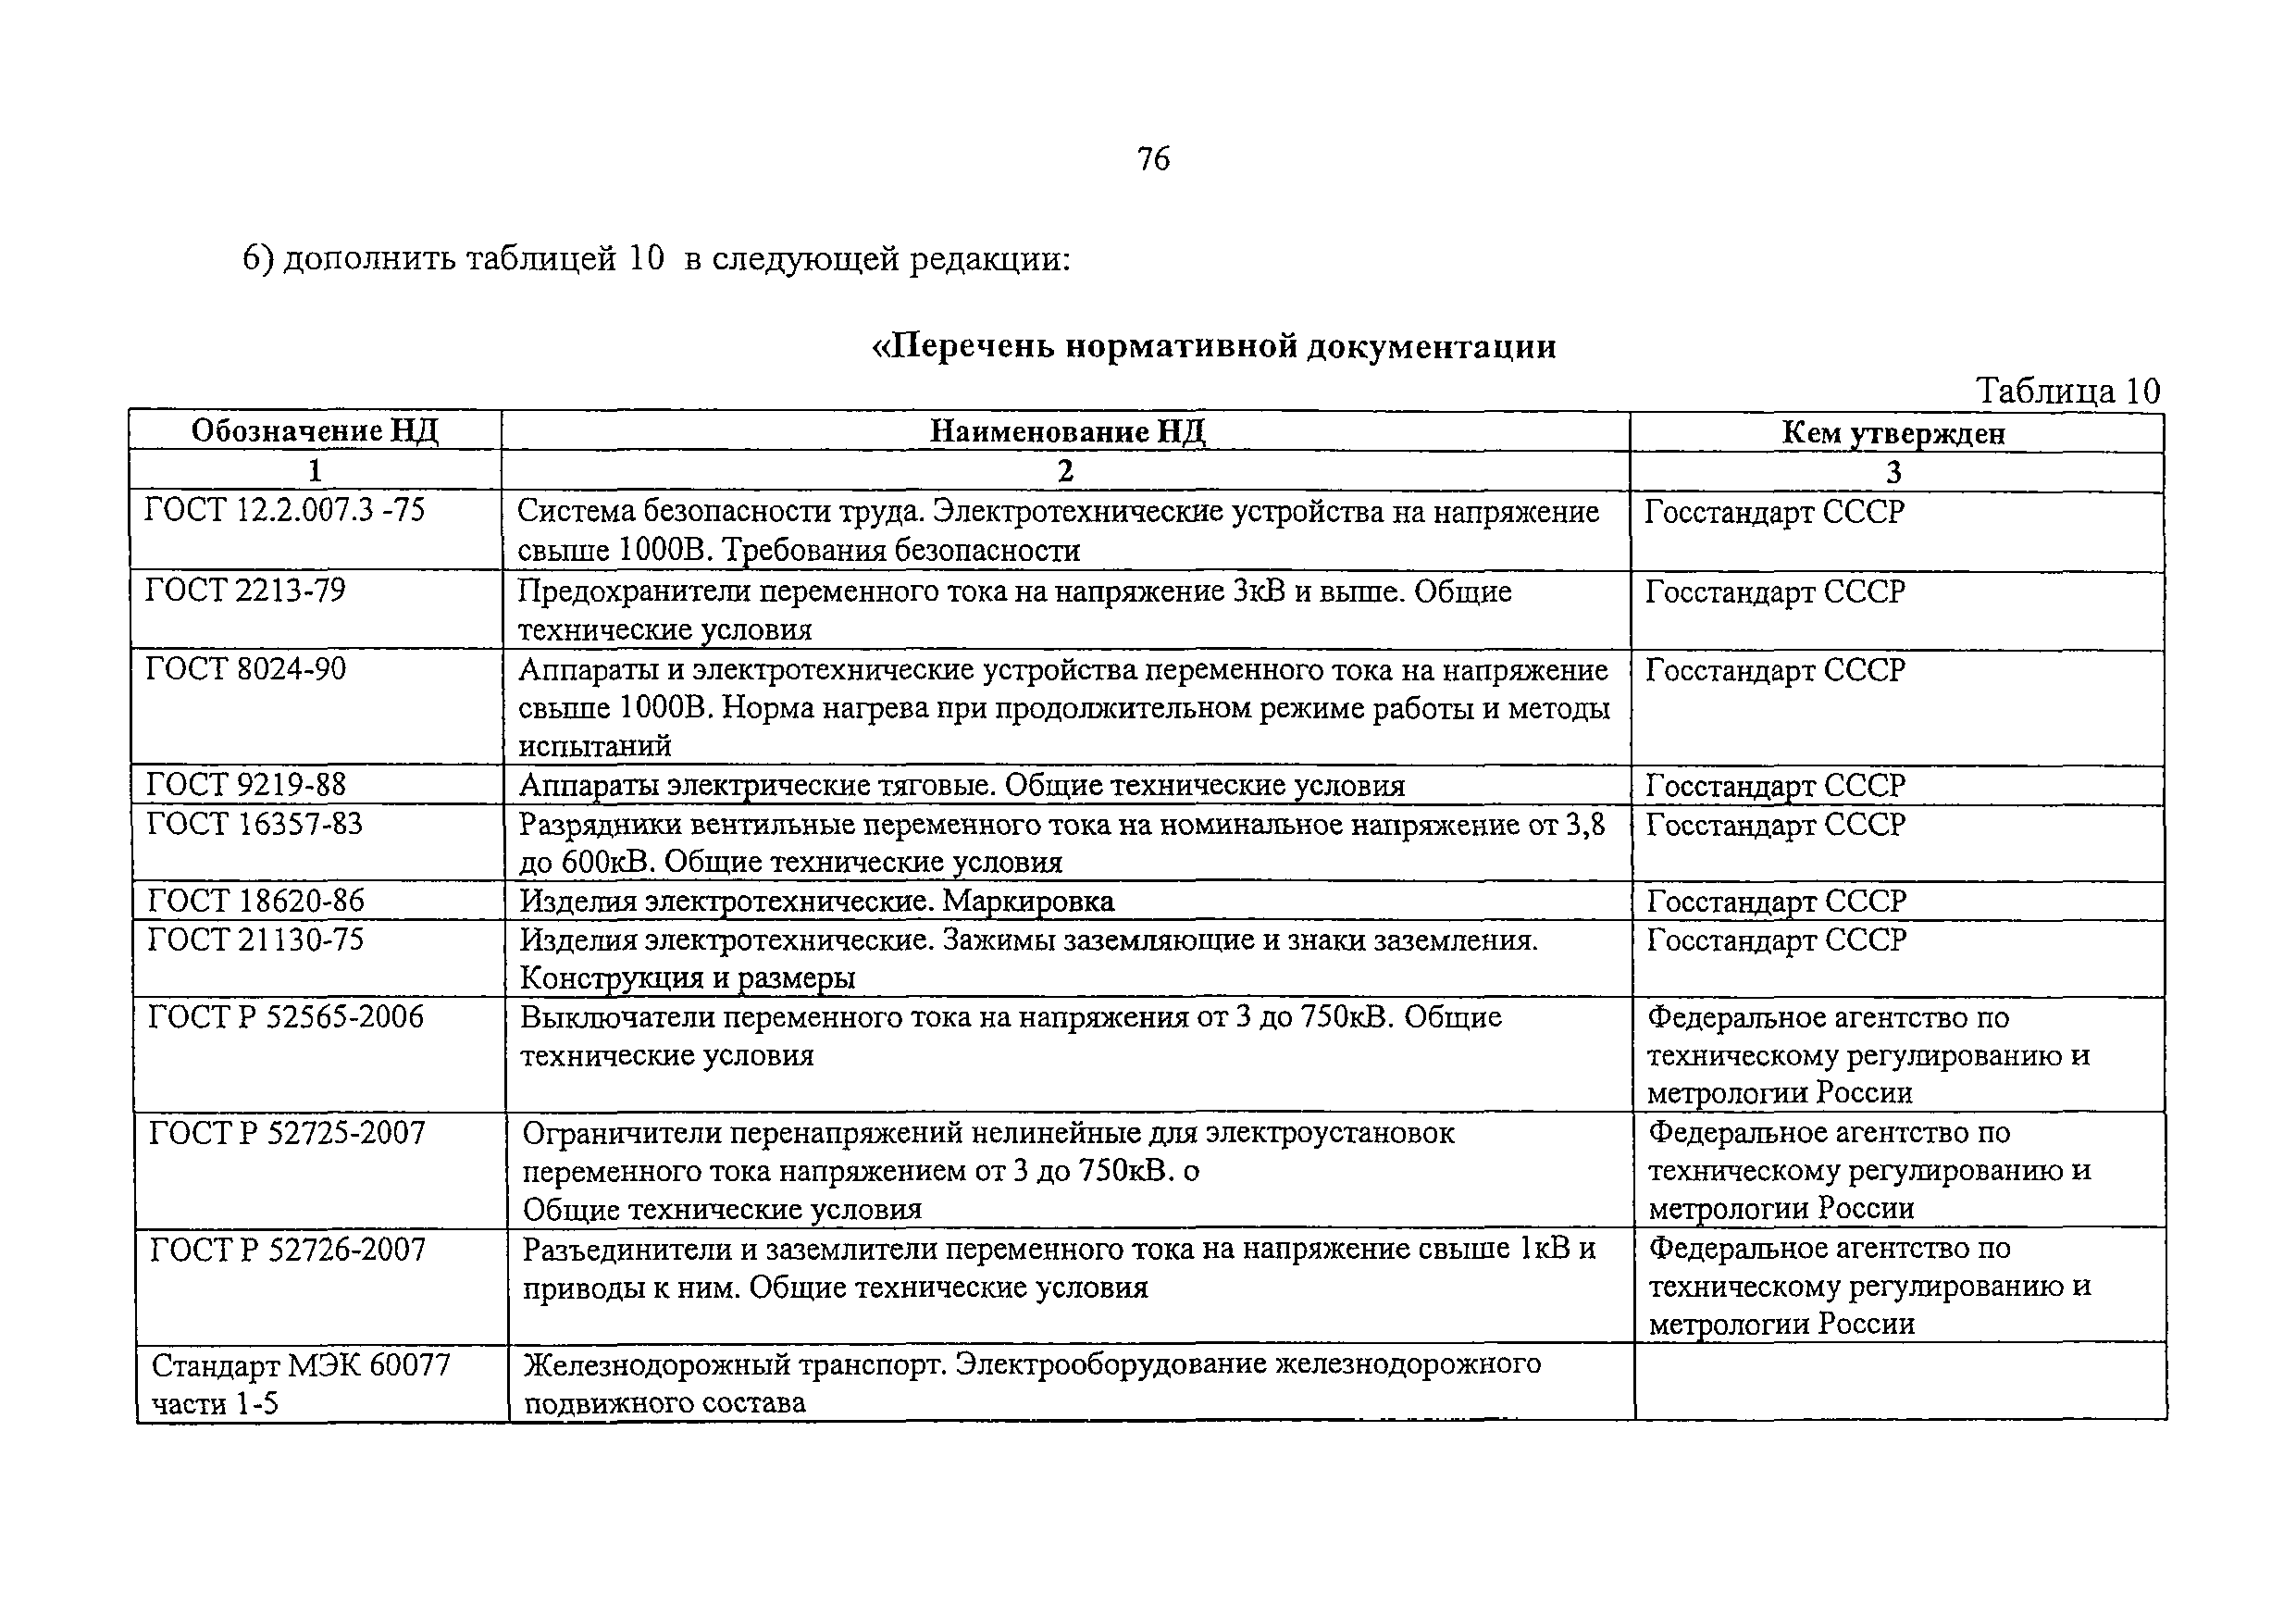 НБ ЖТ ЦТ 144-2003